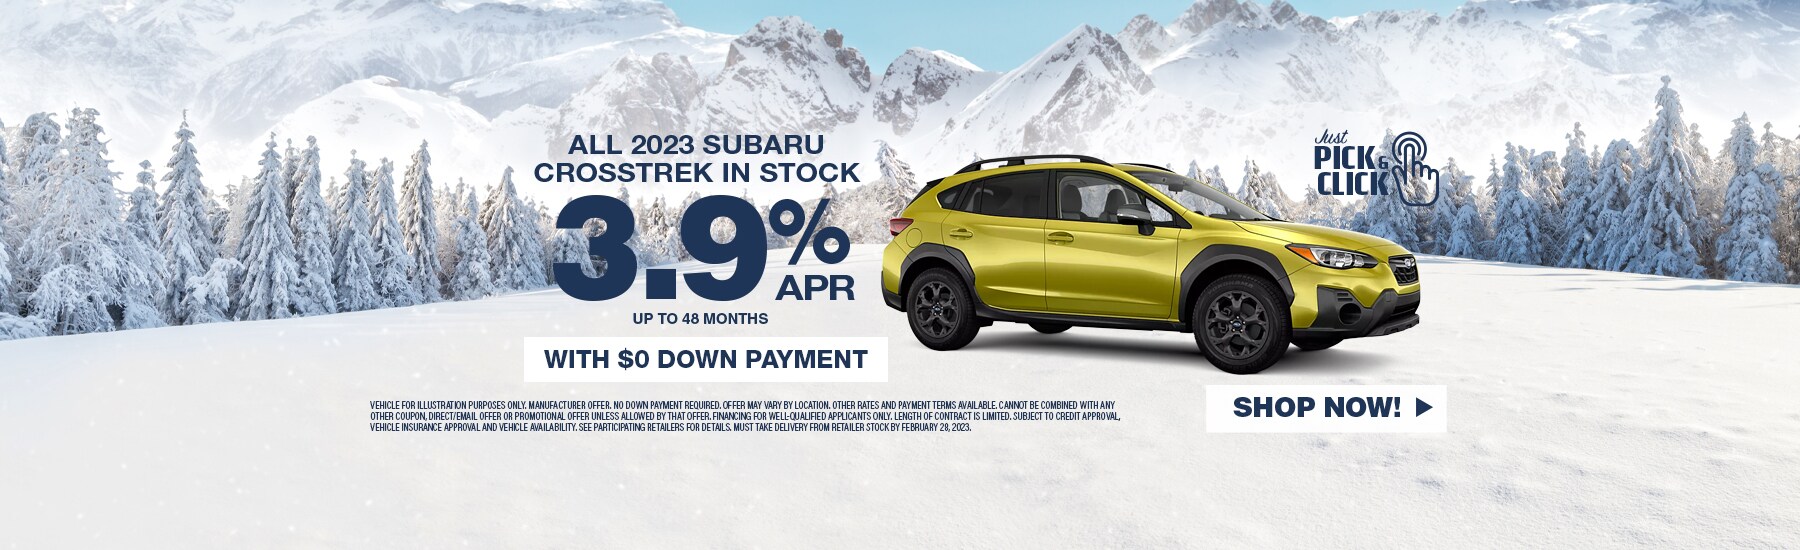 New 2023 Subaru Crosstrek